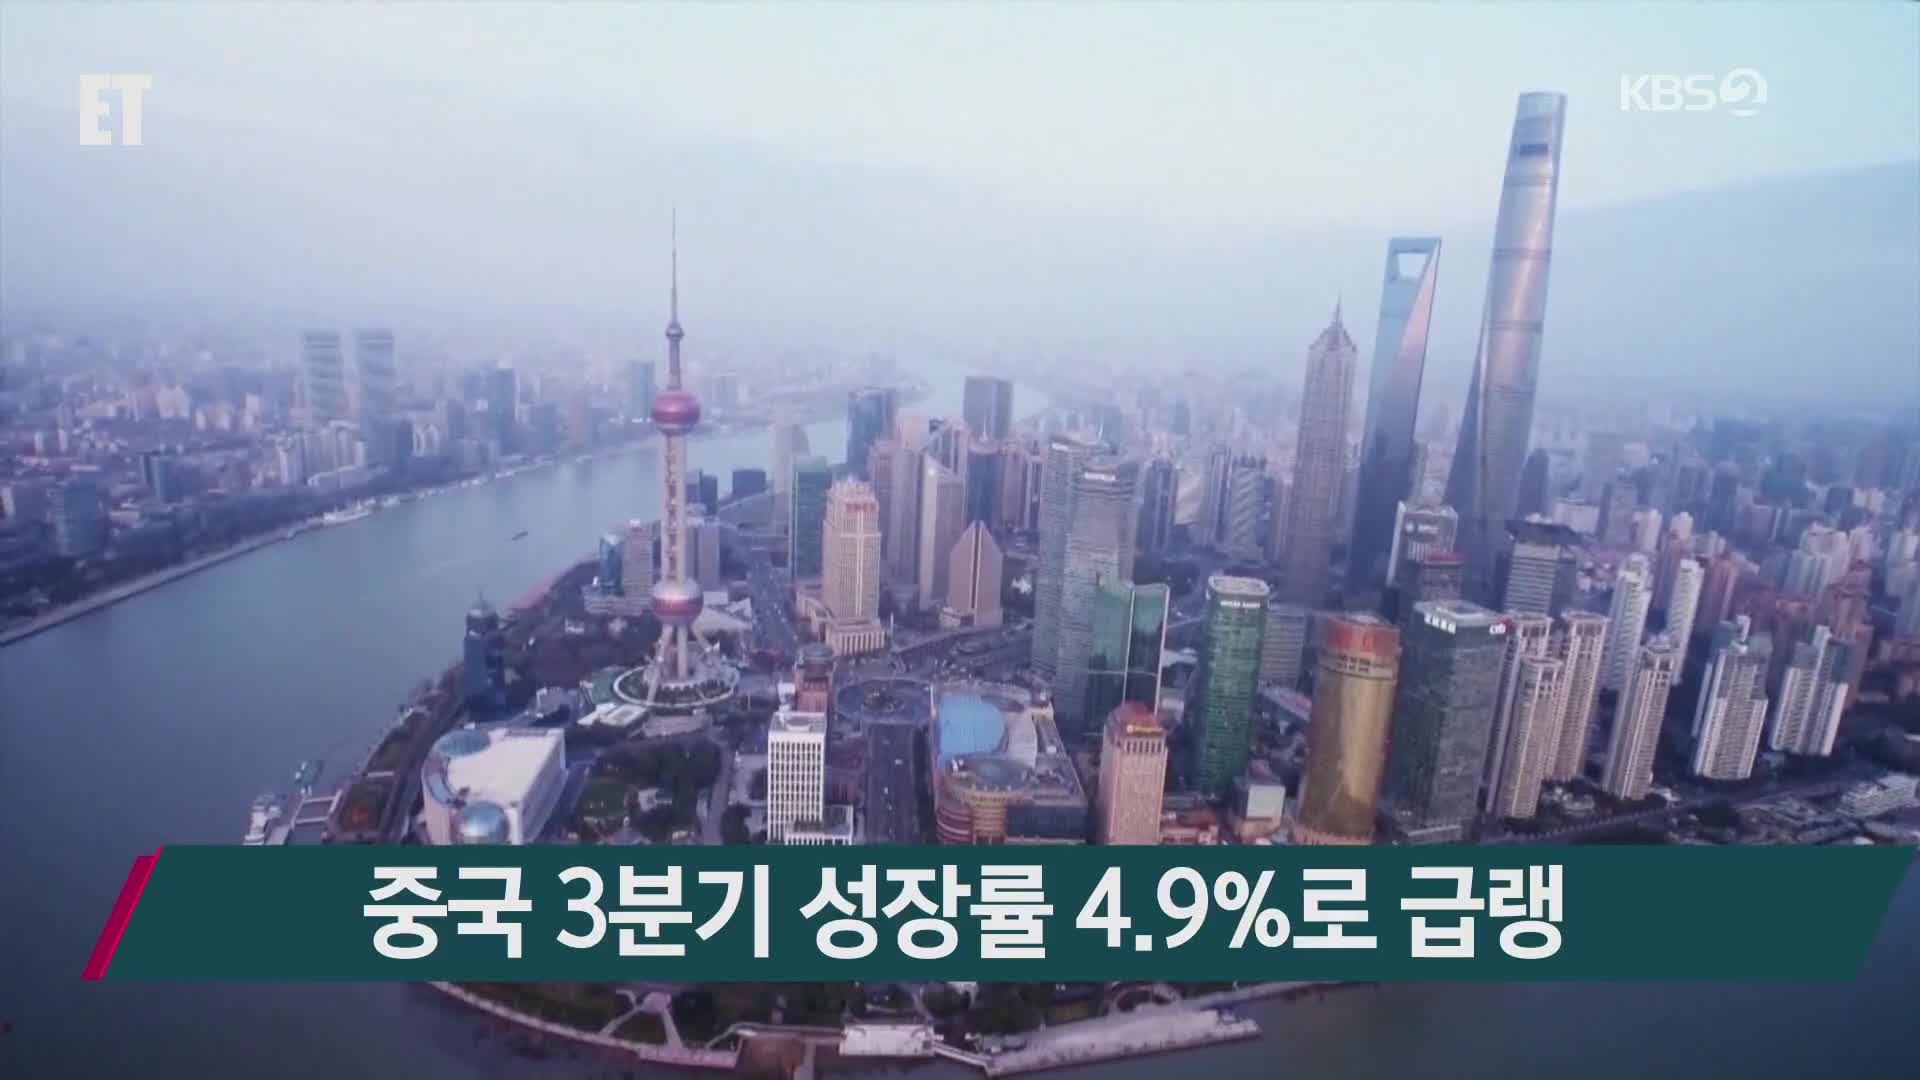 중국 3분기 성장률 4.9%로 급랭